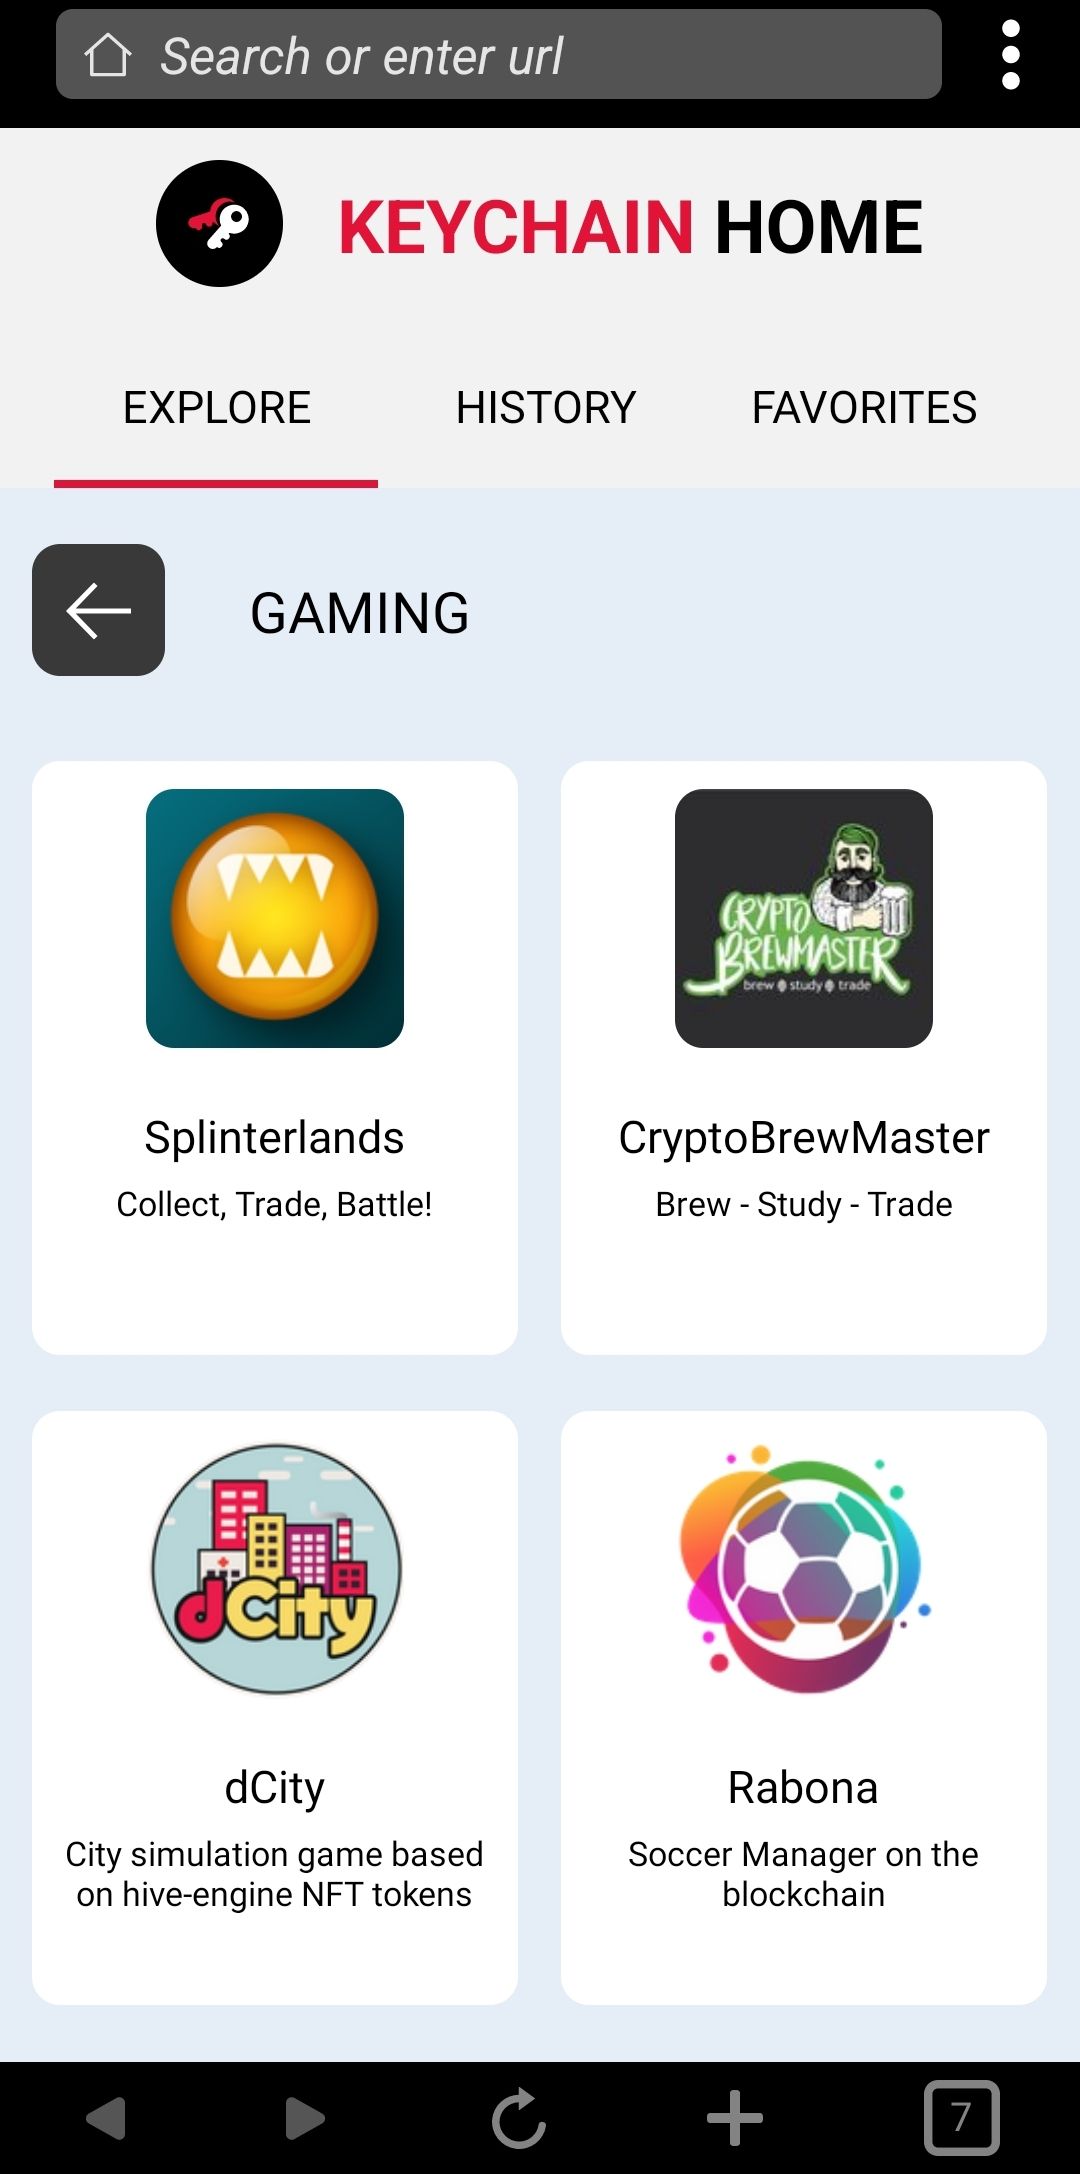 @codingdefined/playing-splinterlands-game-on-mobile